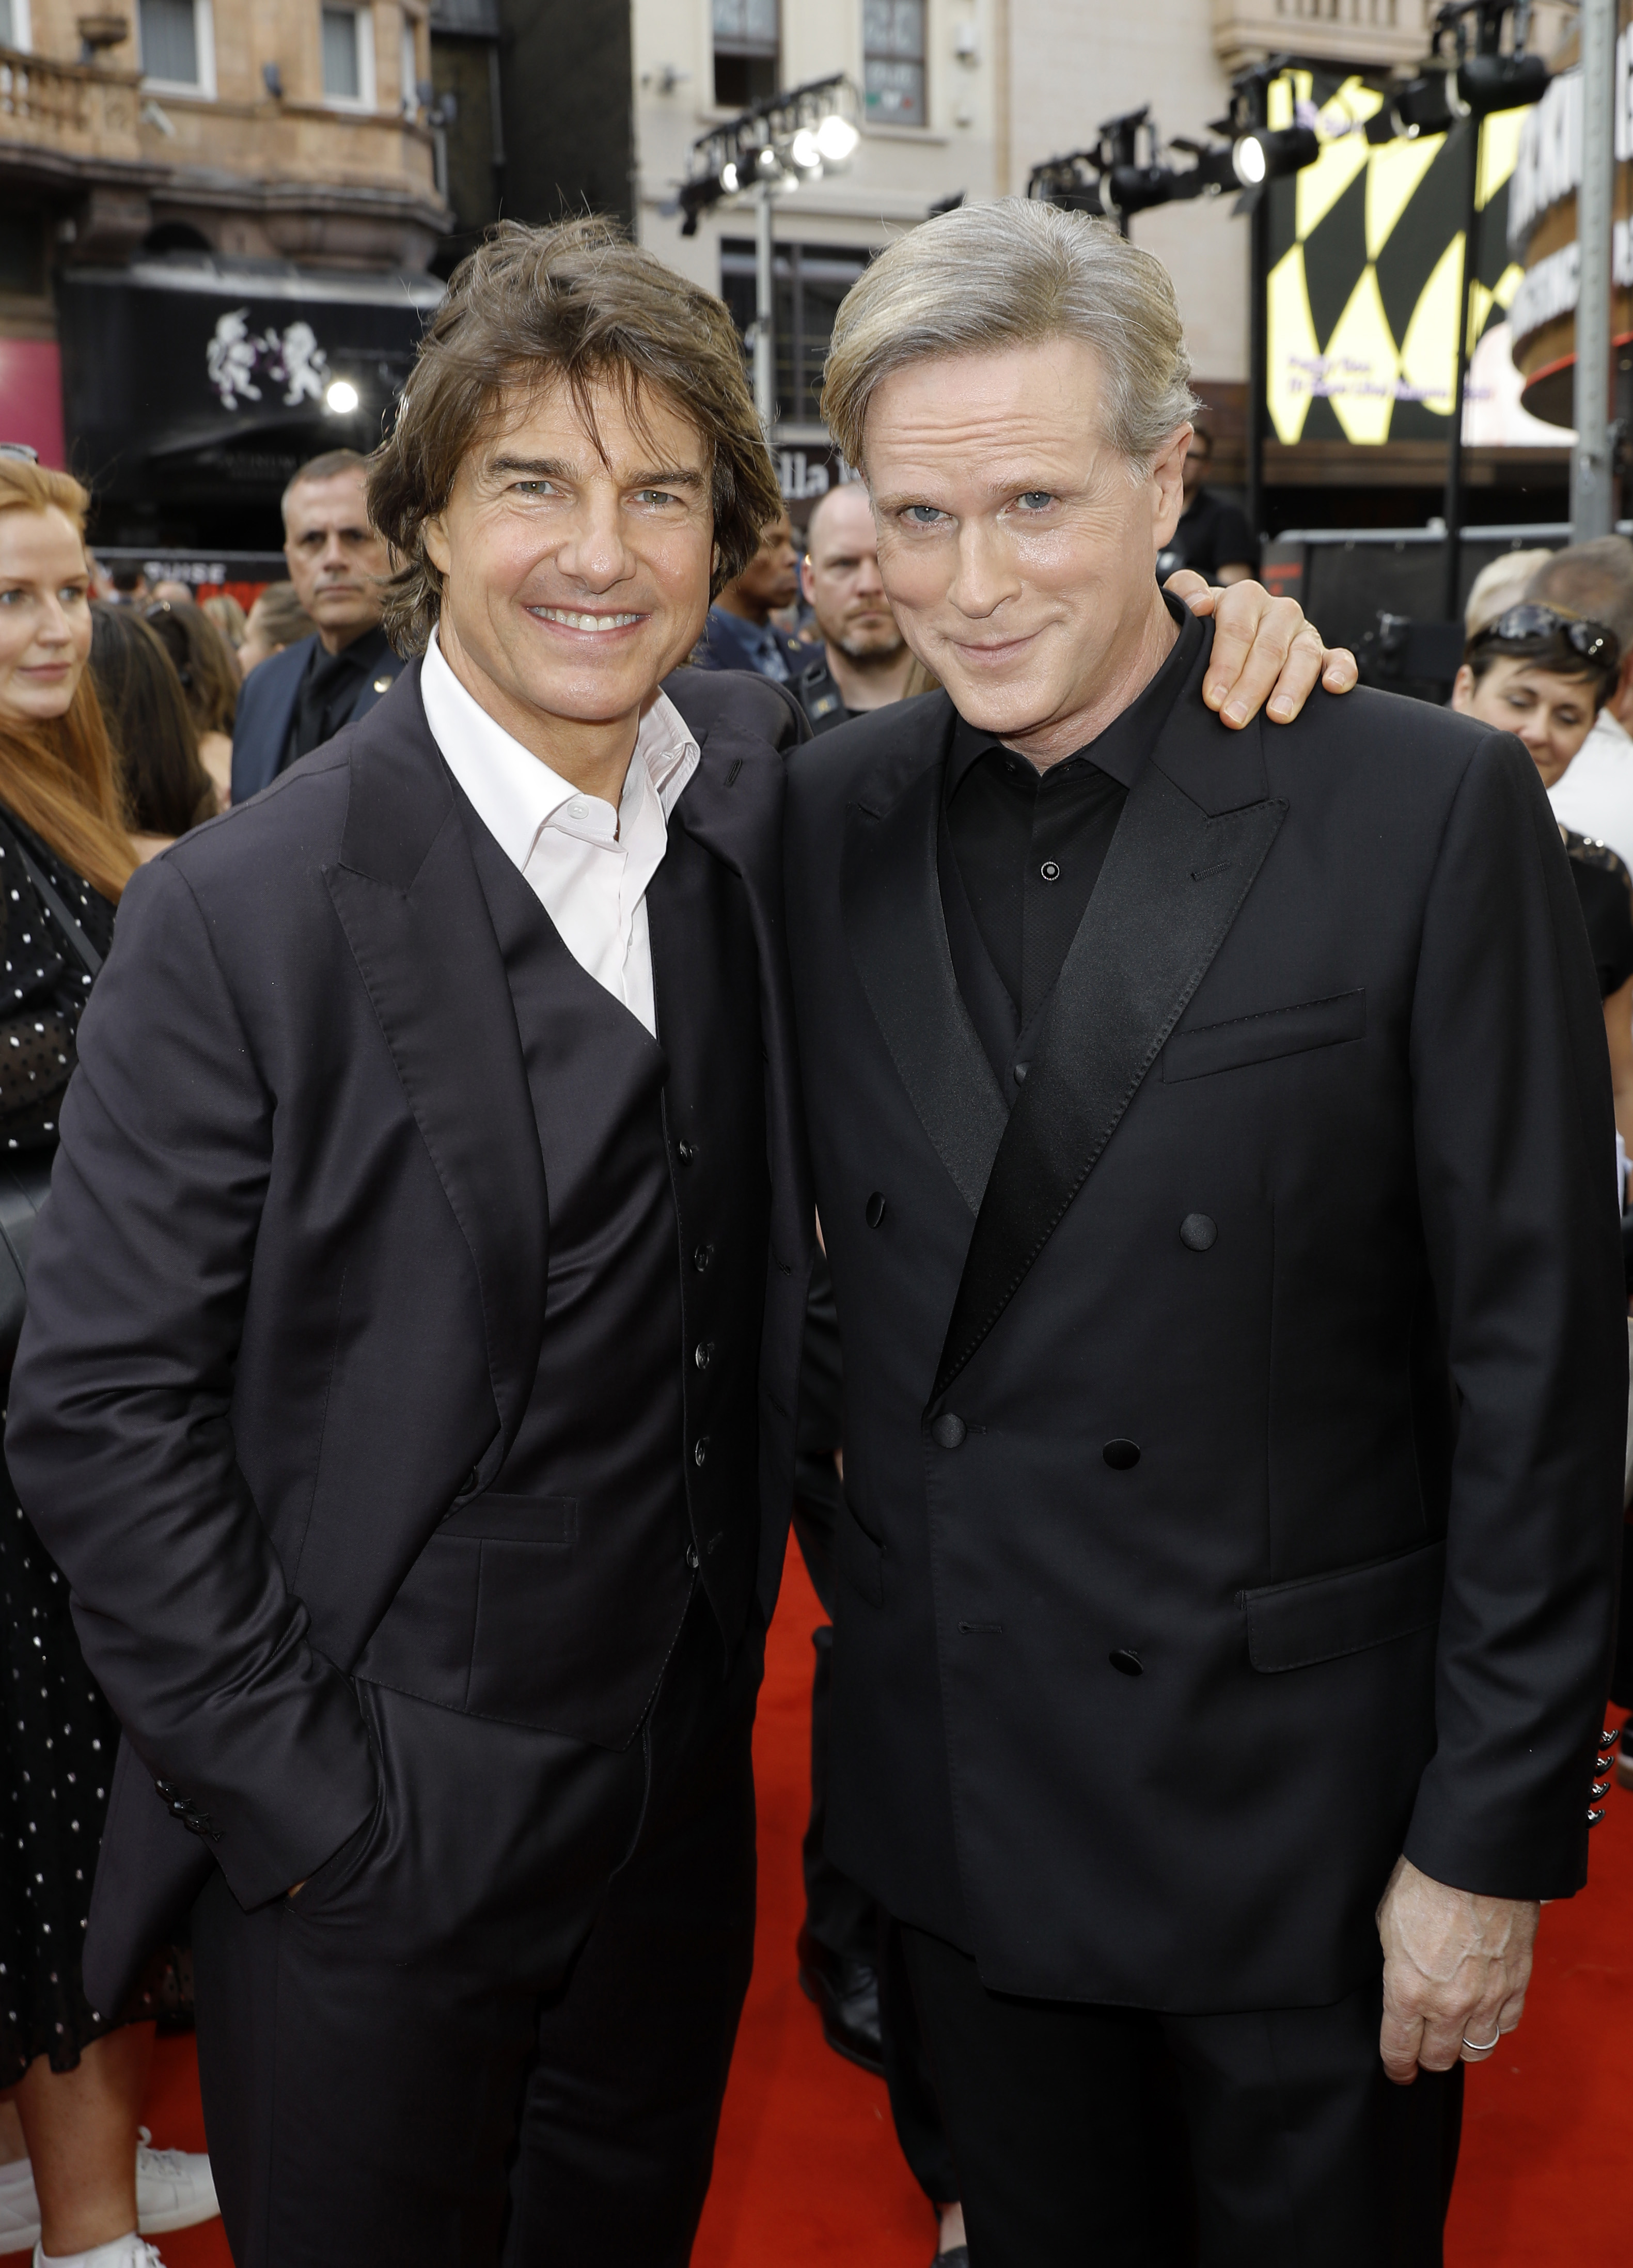 Tom Cruise und Cary Elwes bei der britischen Premiere von "Mission: Impossible - Dead Reckoning Part One" am 22. Juni 2023 in London, England | Quelle: Getty Images